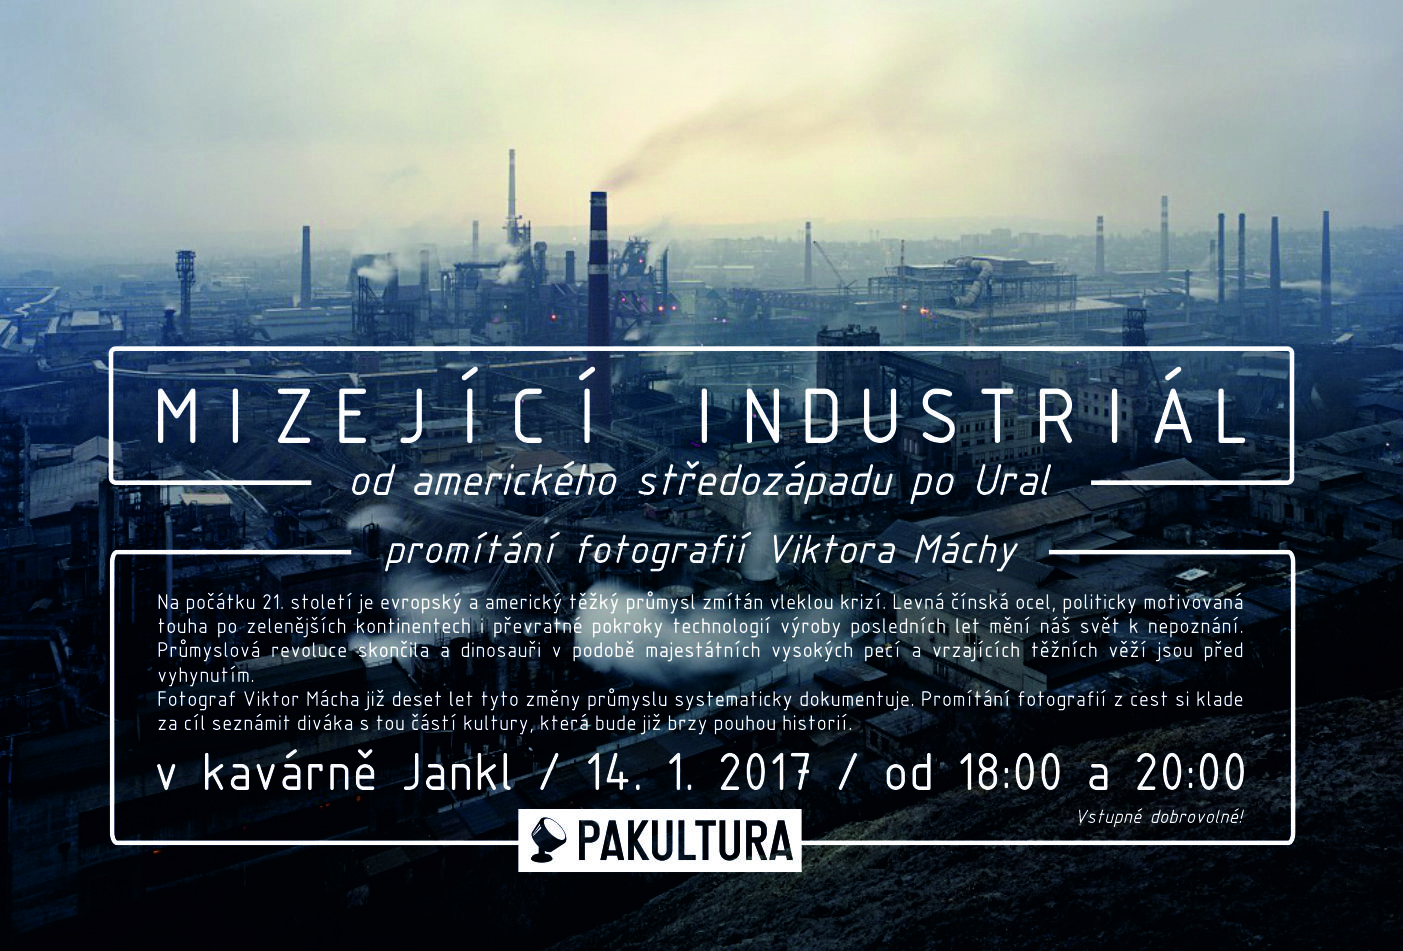  Mizející Industriál | 18h, 14. 1. 2017 | Kavárna JANKL 